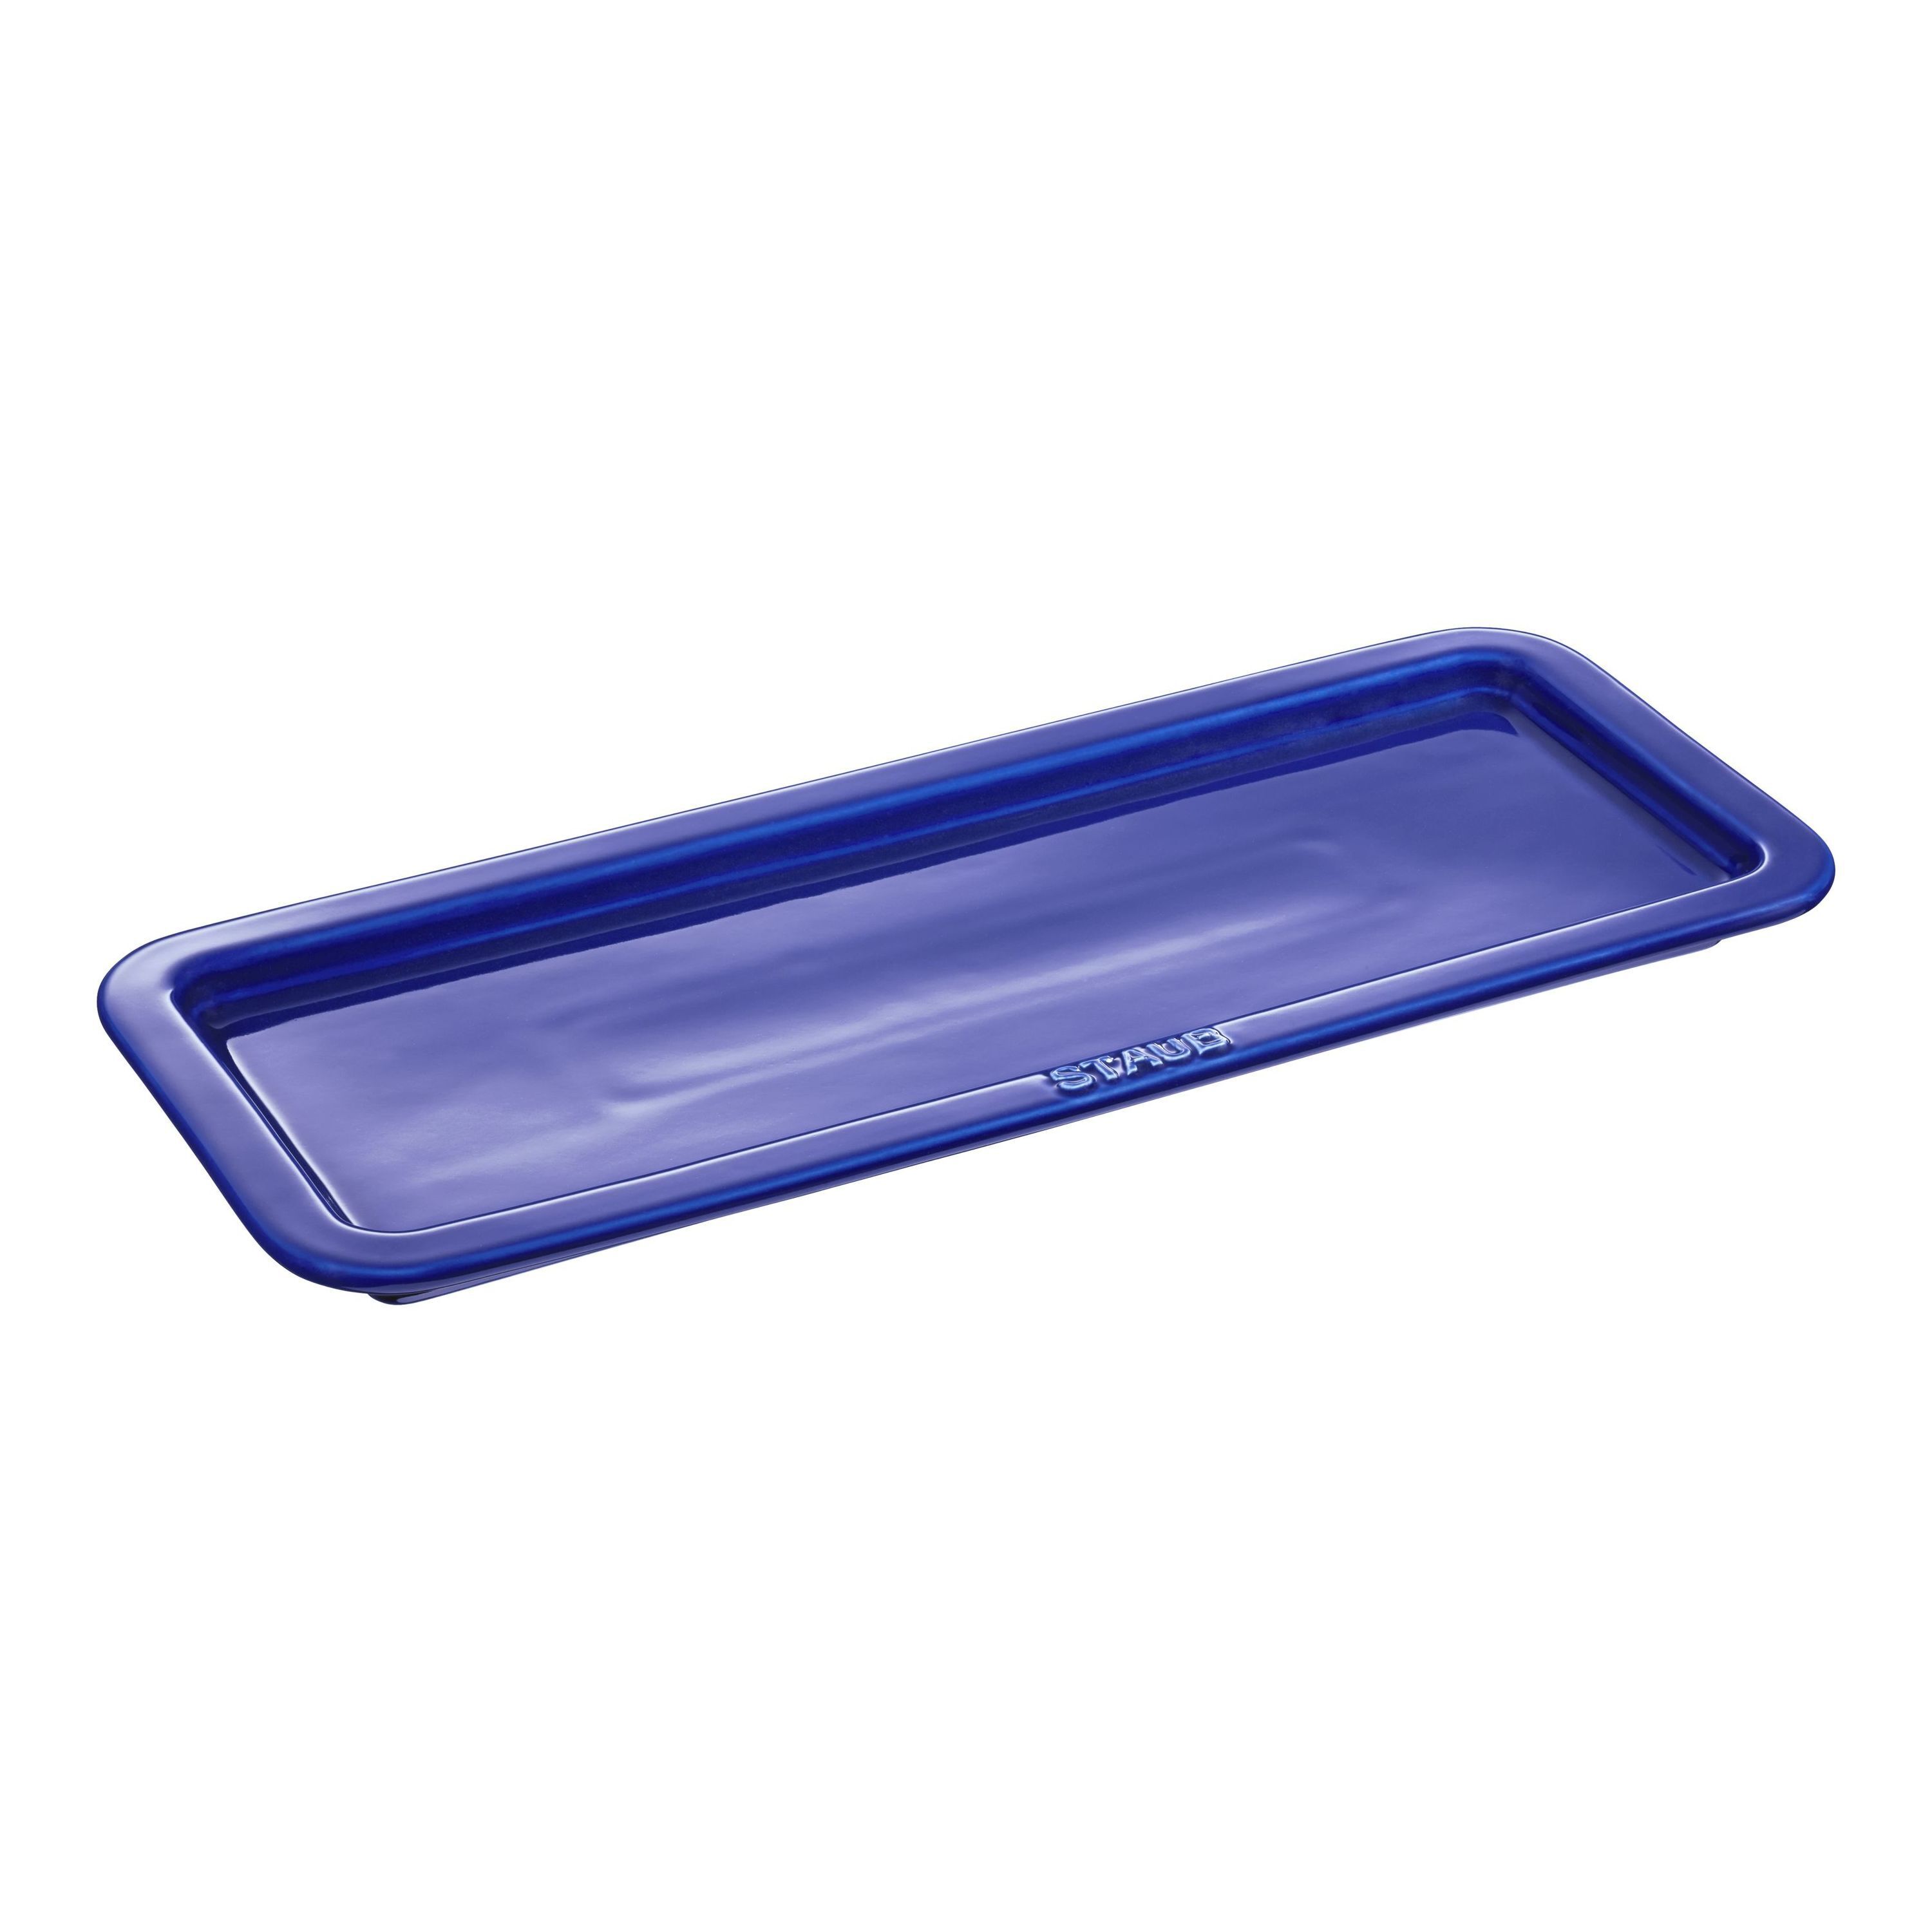 staub ceramique piatto da servizio rettangolare - 36 cm x 14 cm, blu scuro